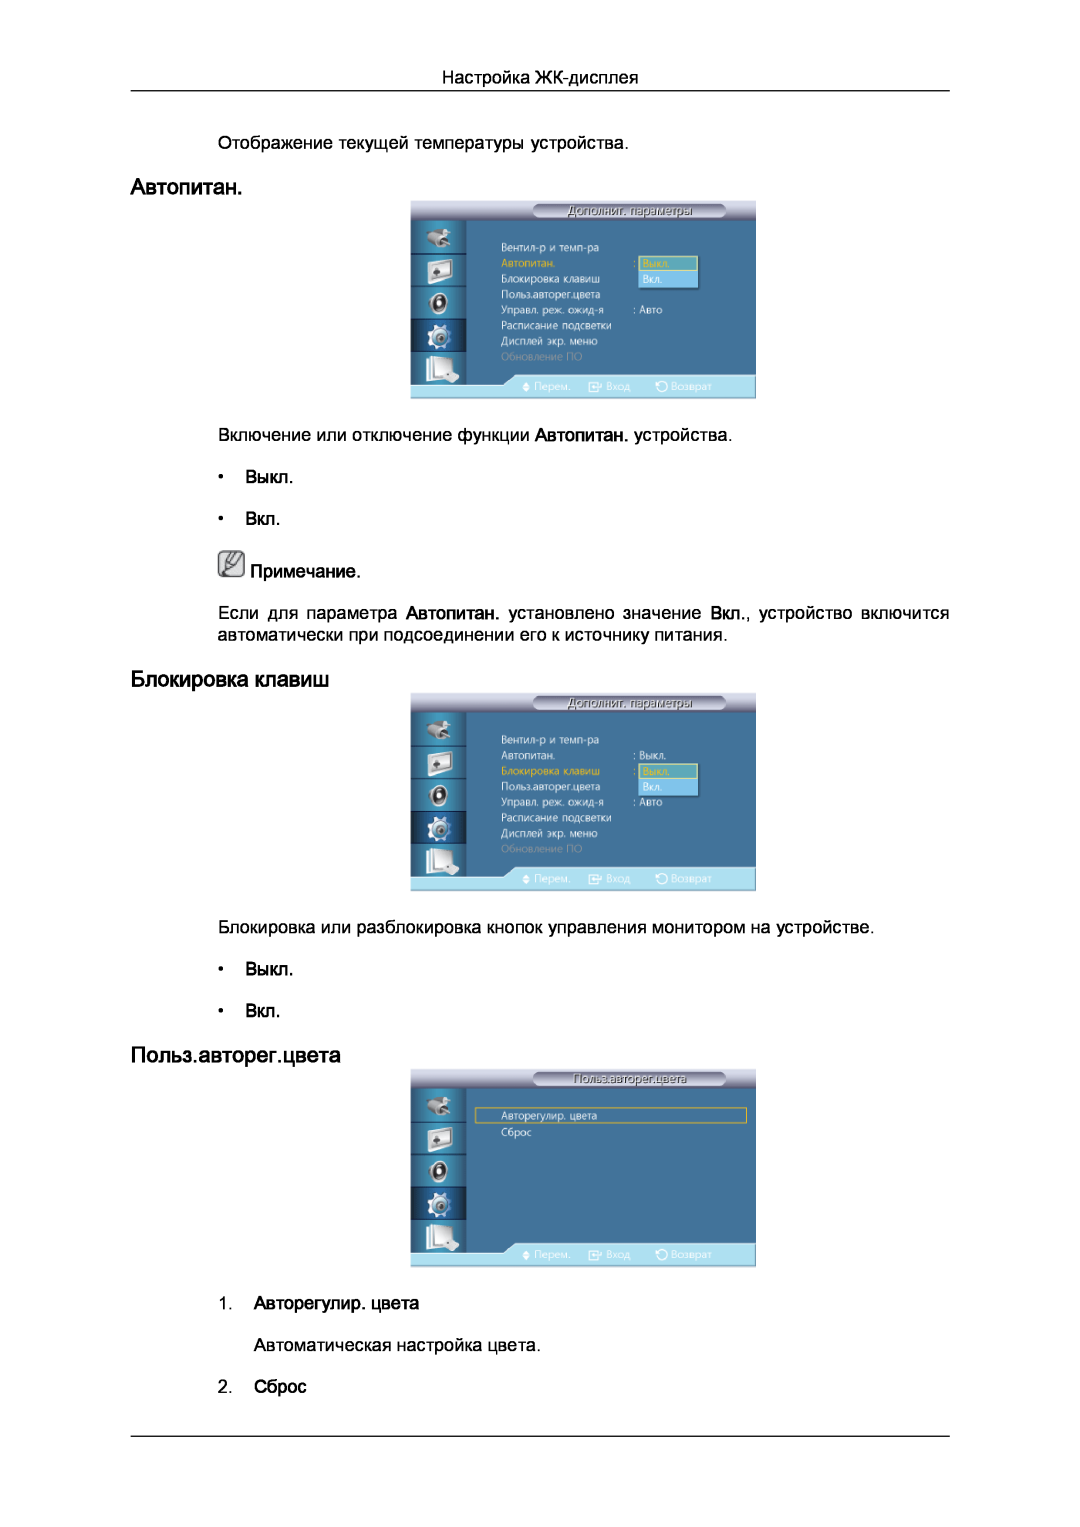 Samsung LH32CRSMBD/EN, LH32CRTMBC/EN manual Автопитан, Блокировка клавиш, Польз.авторег.цвета, Выкл Вкл Примечание 